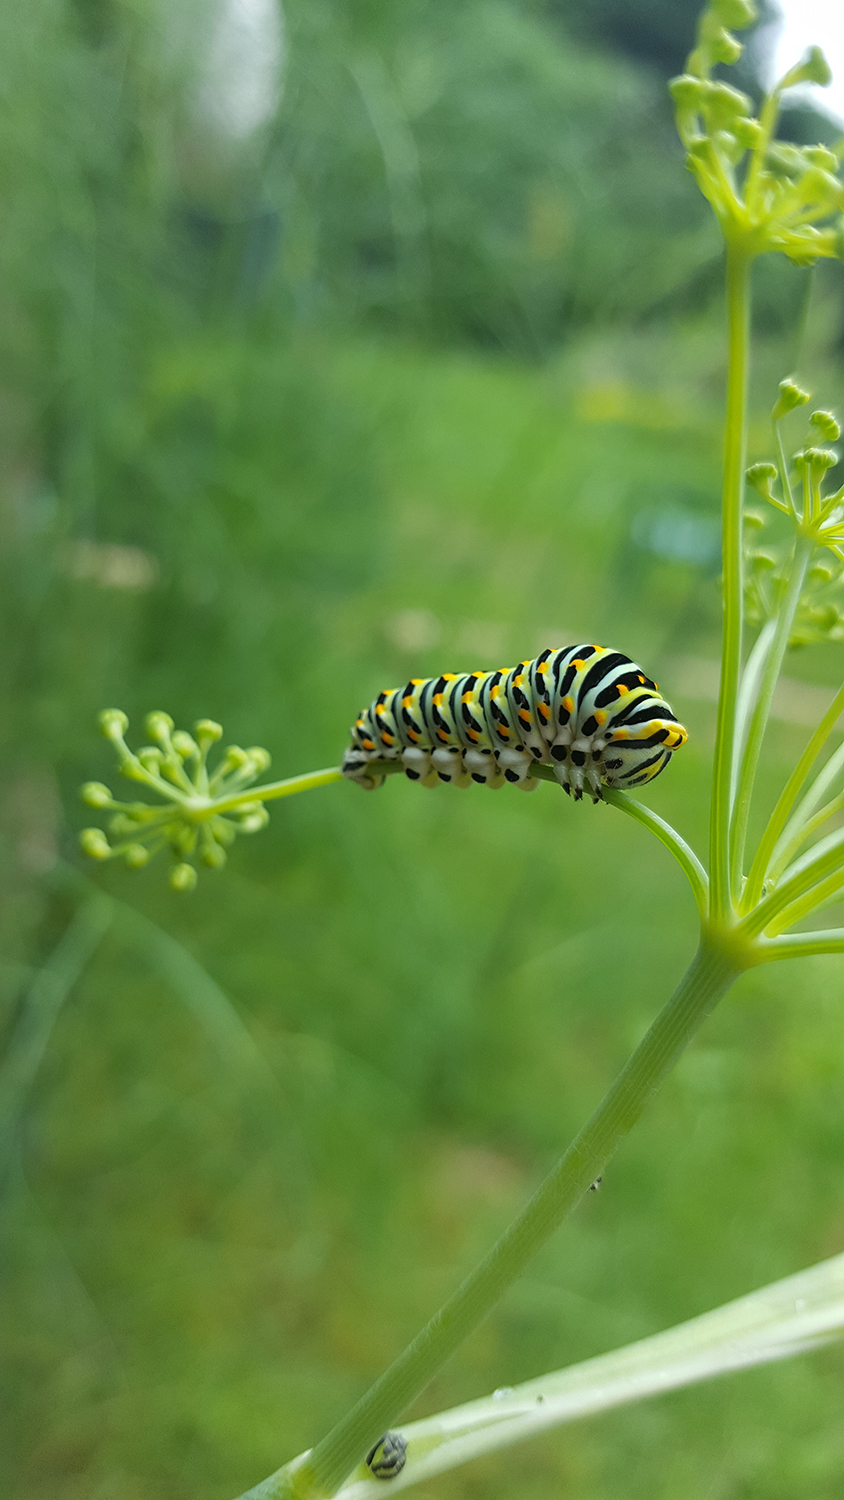 Une chenille verte jaune orangé et noire de papillon machaon ou grand porte-queue dans le fenouil de mon jardin vue de loin.